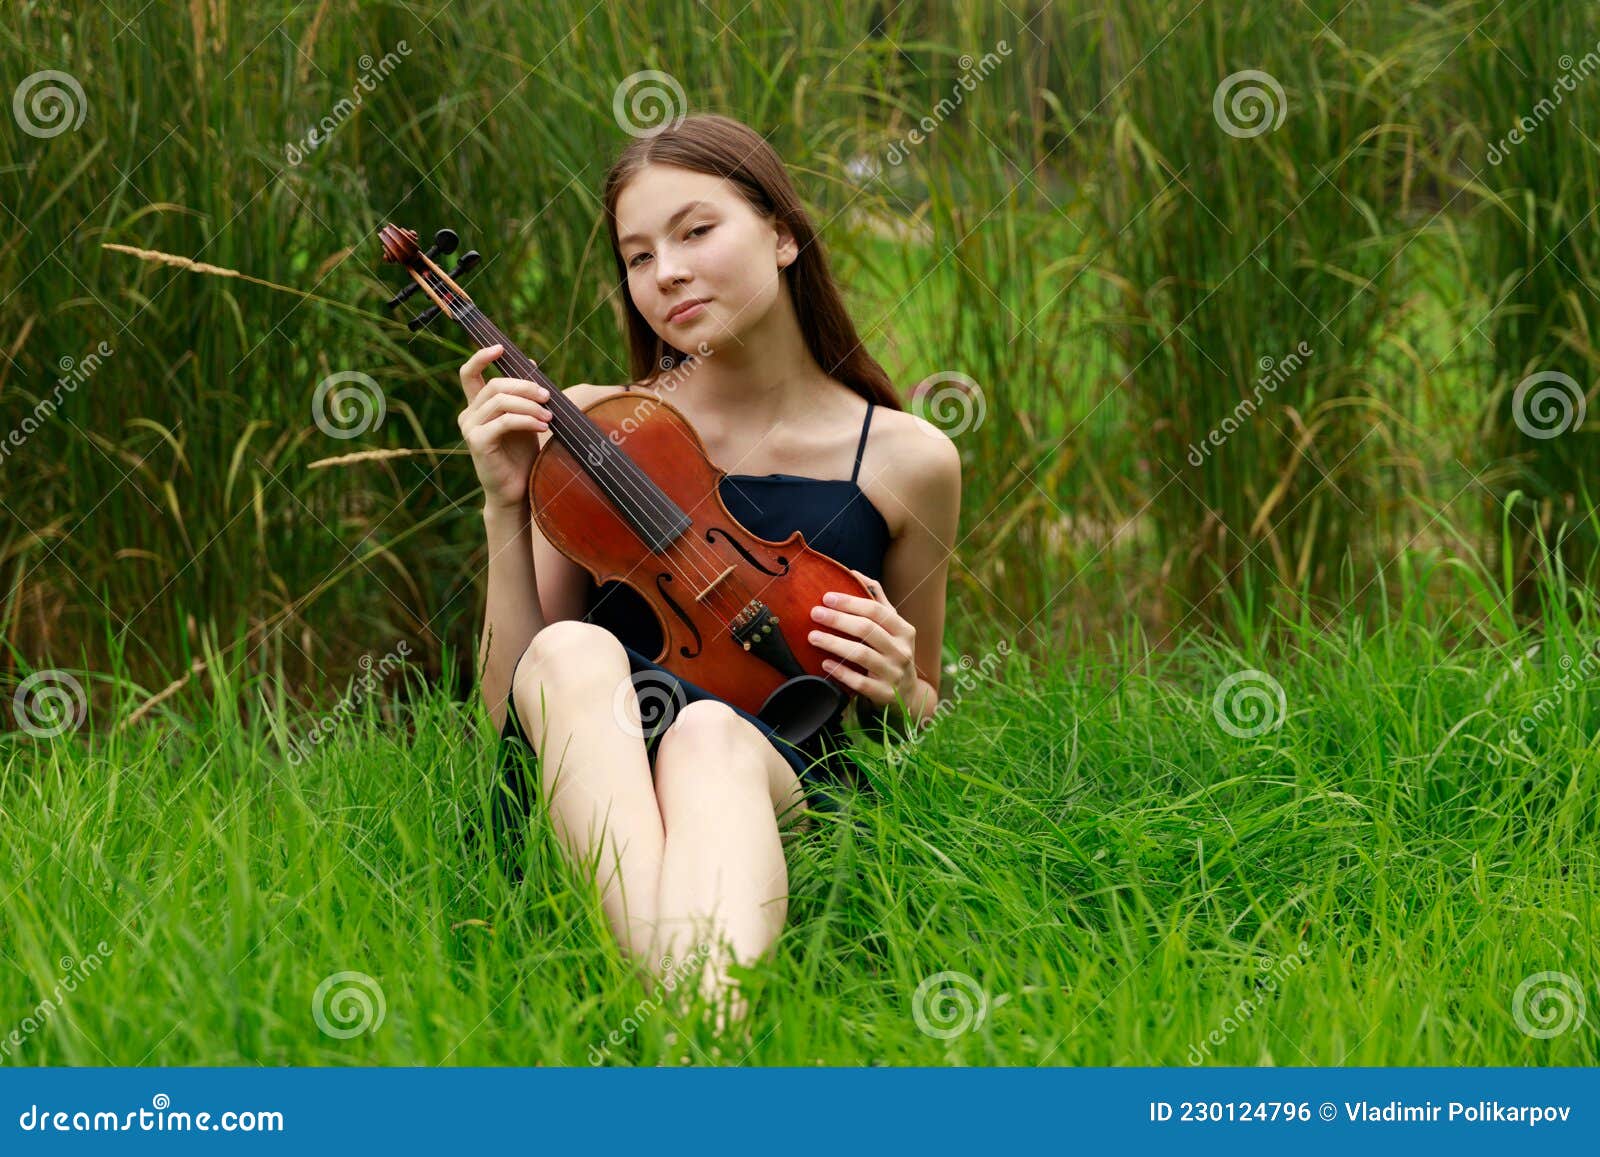 女孩,小提琴,花,椅子,陈设,音乐壁纸高清大图预览1920x1080_美女壁纸下载_墨鱼部落格